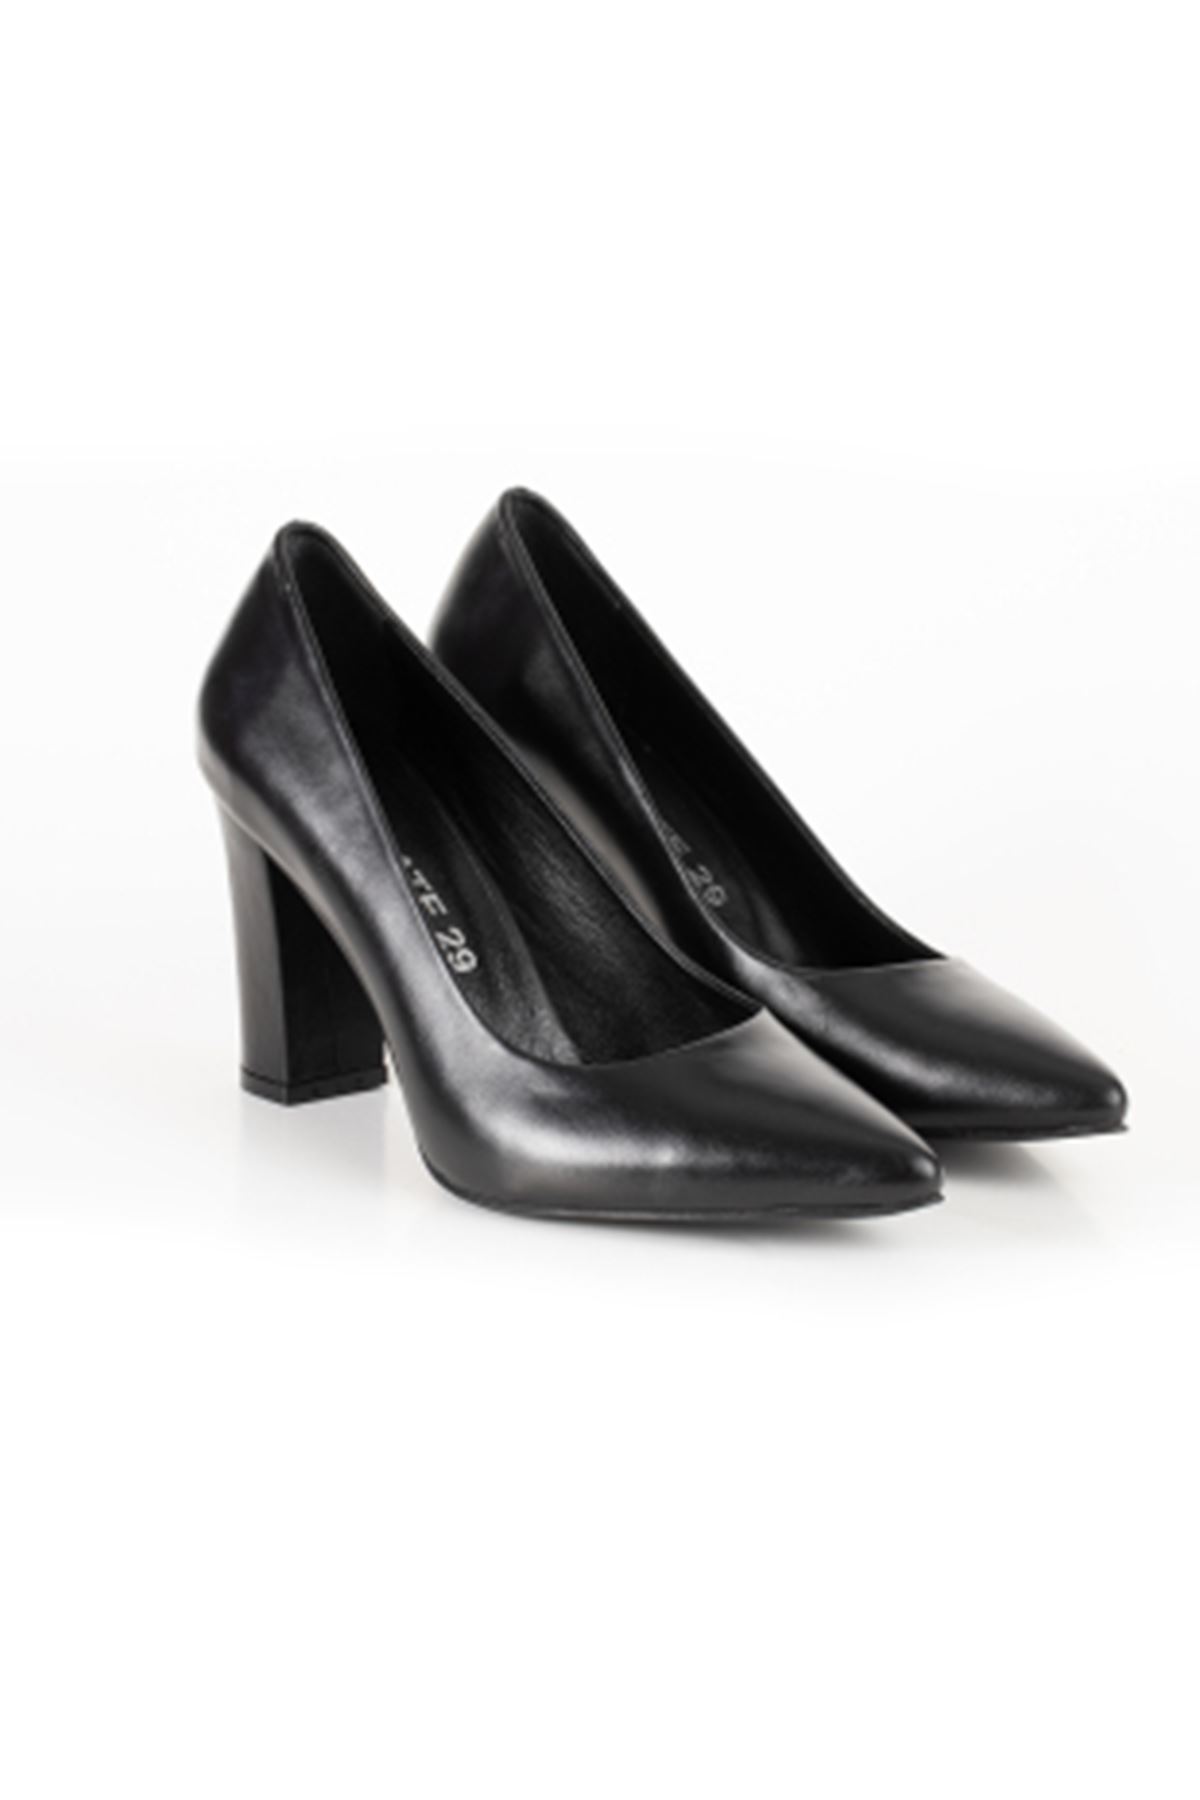 Hakiki Deri Kadın Deri Topuklu Ayakkabı 1786 Gate Shoes -Siyah